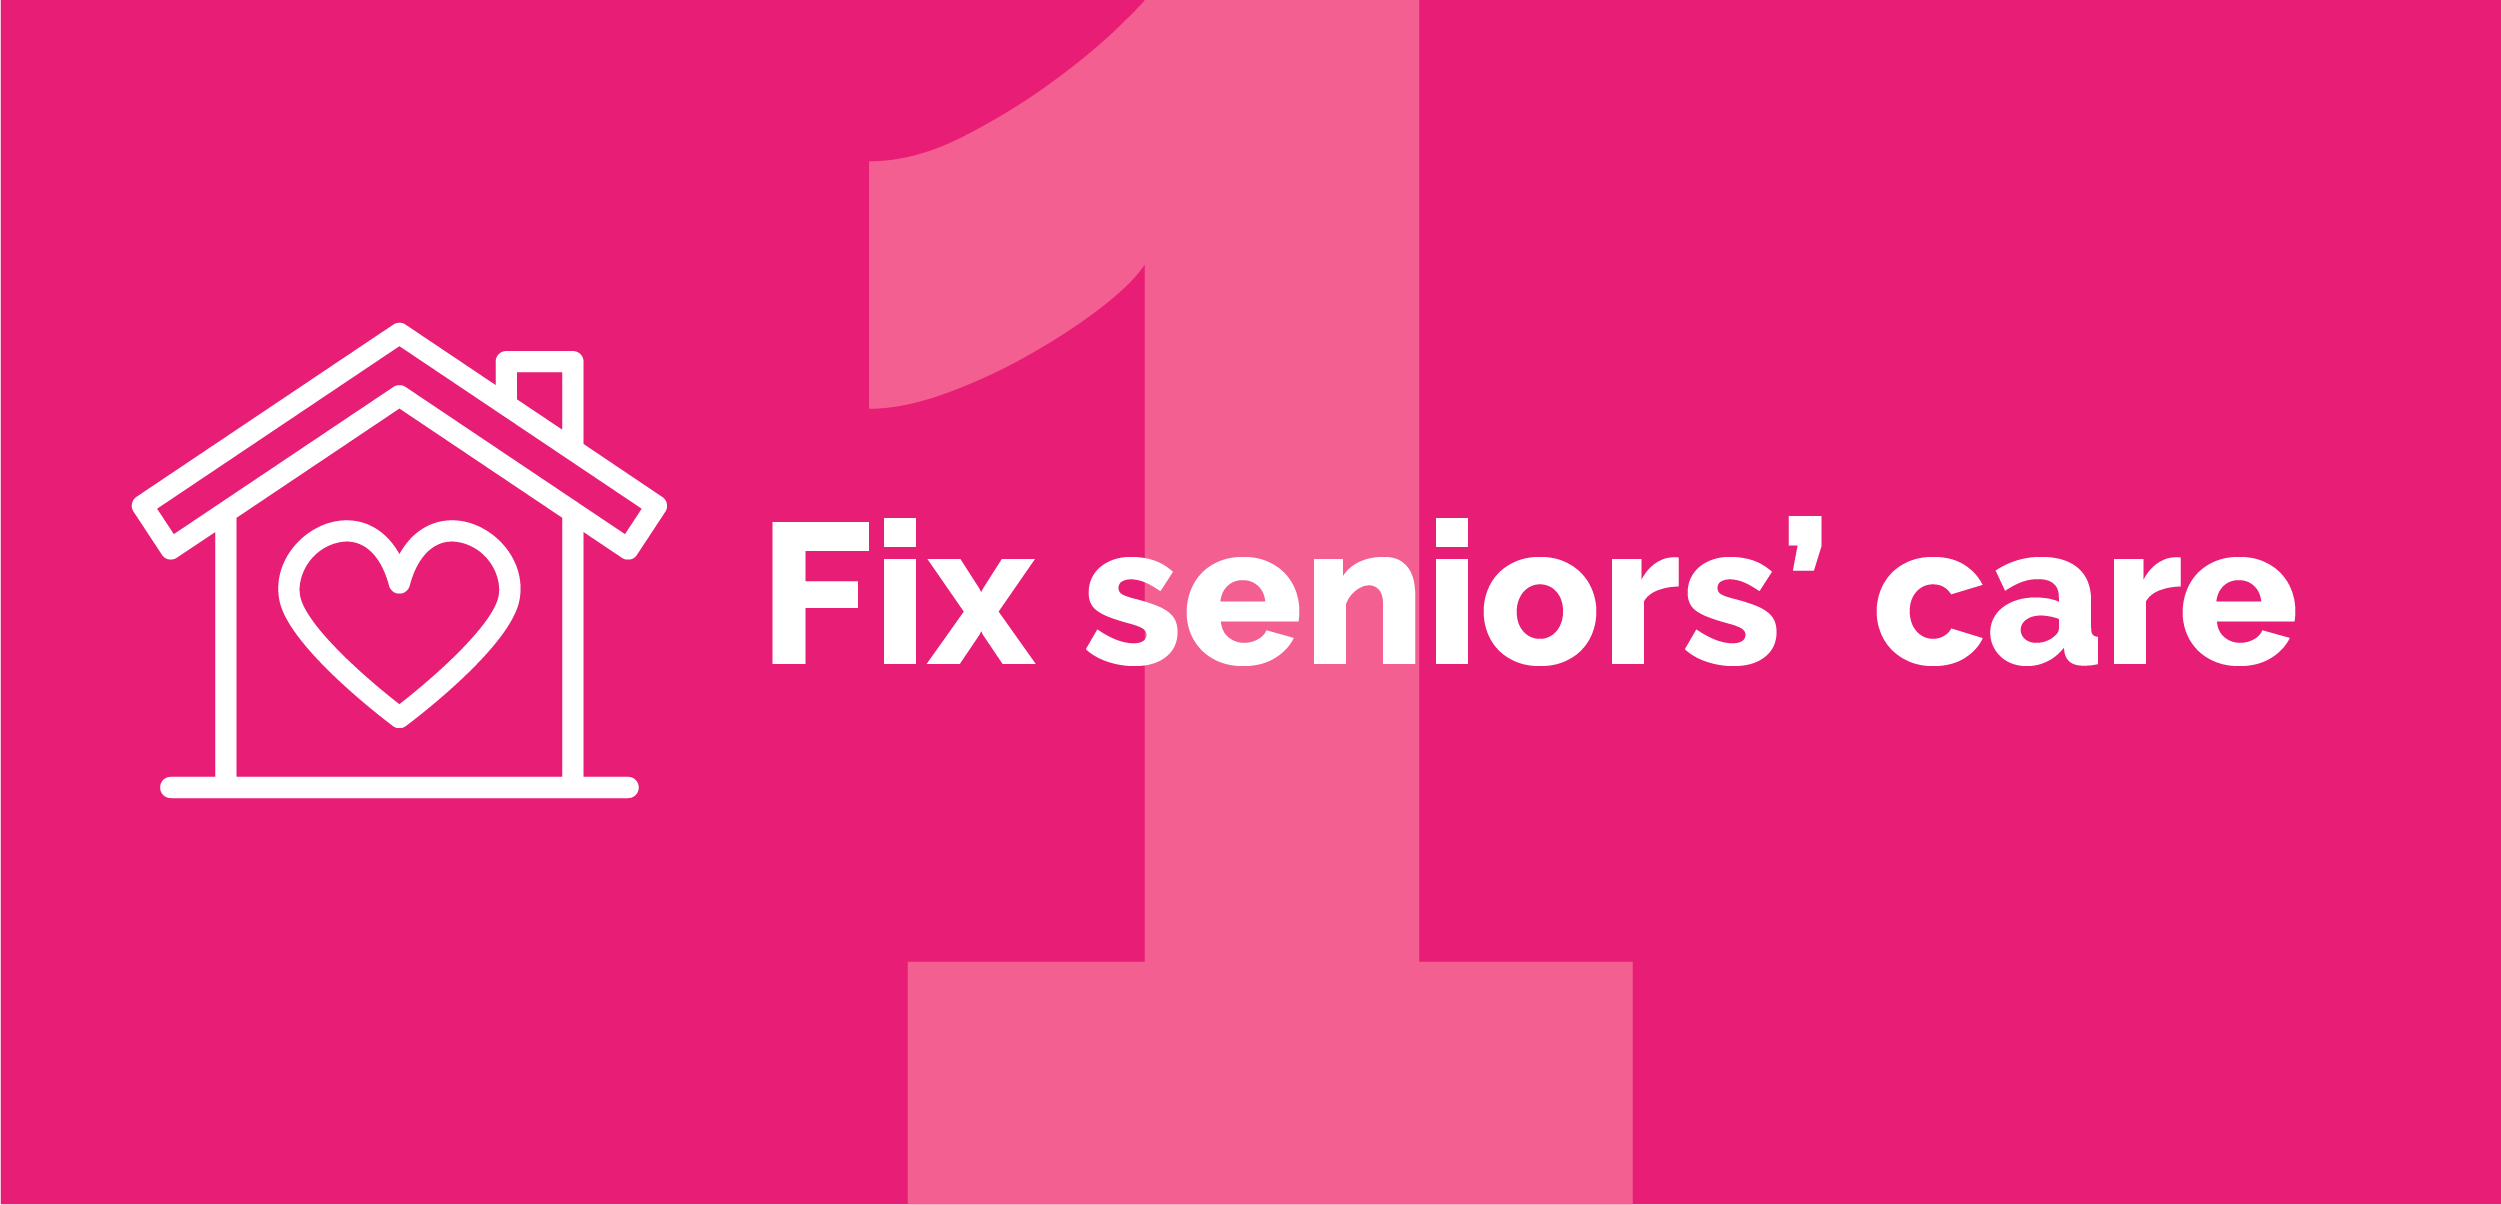 Fix seniors' care